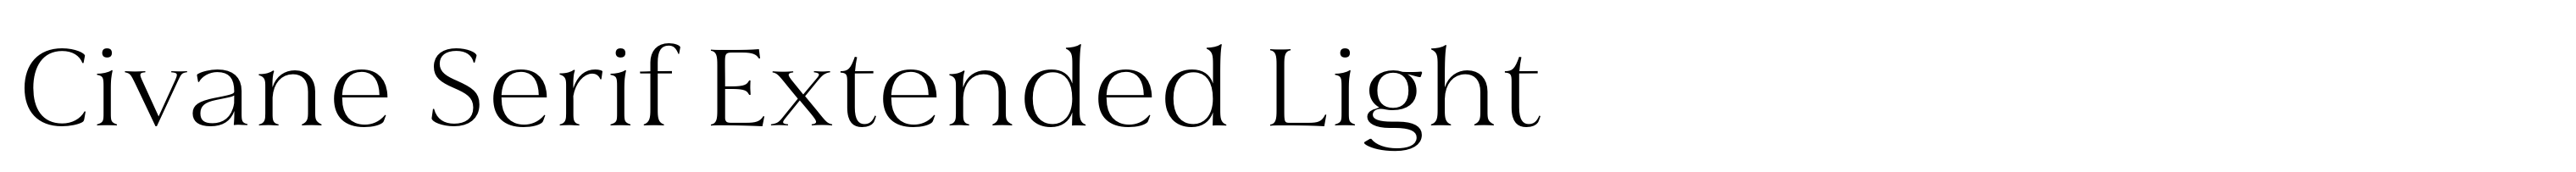 Civane Serif Extended Light